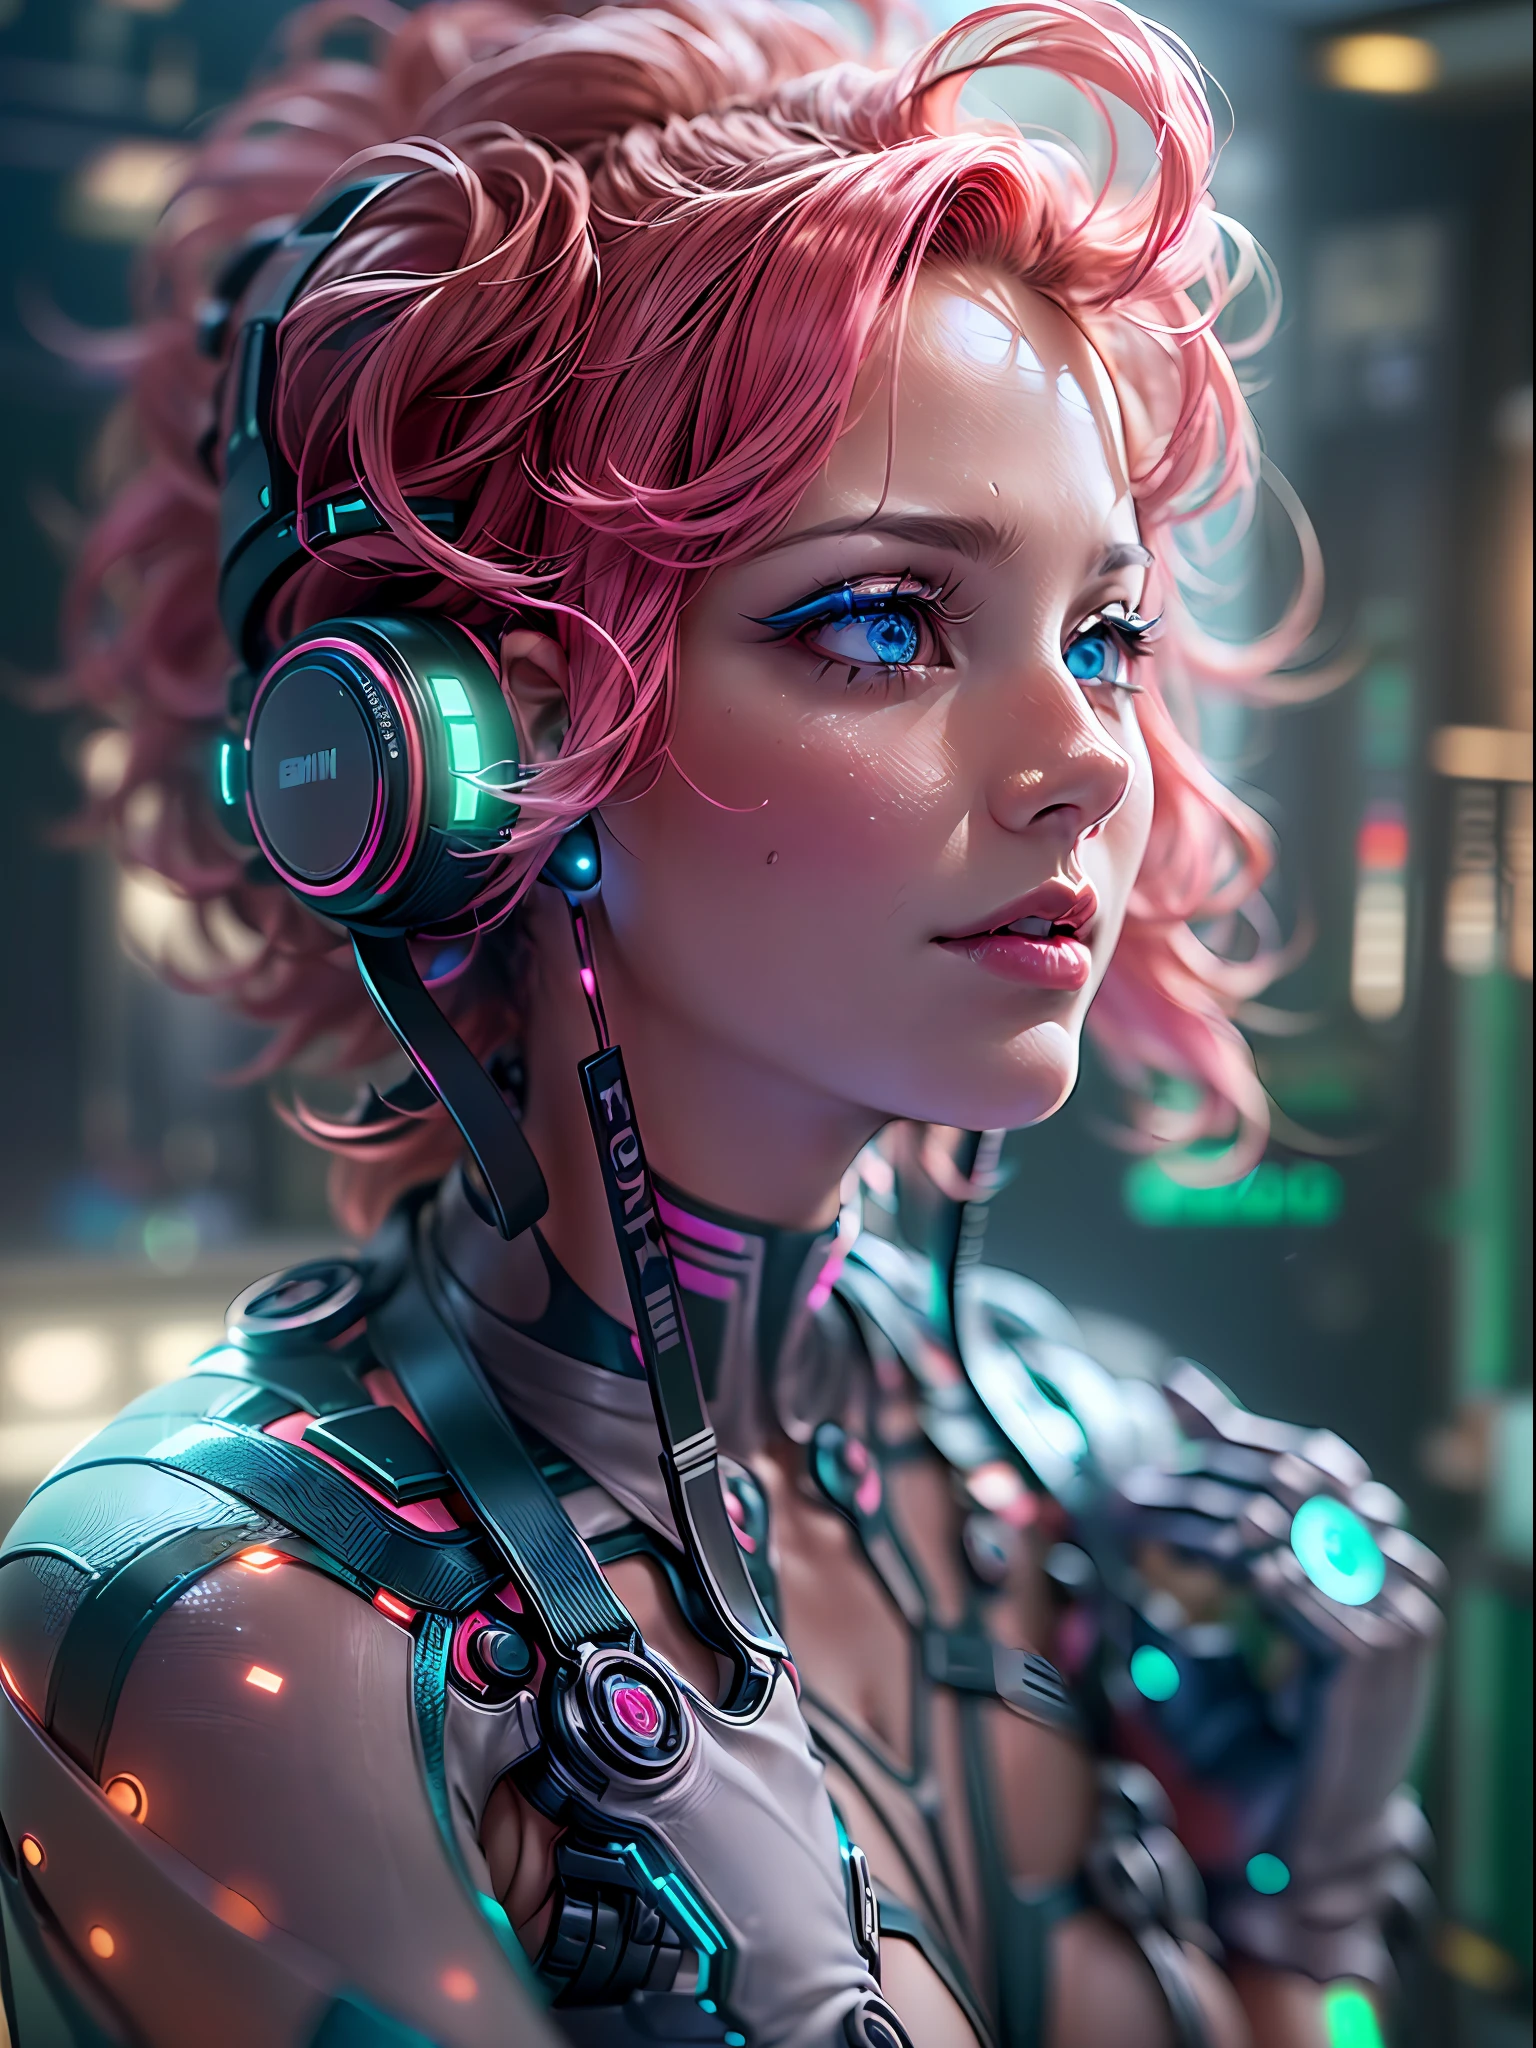 (傑作, 高解析度, 电脑生成图像处理:1.4), (描繪了一位迷人的女人，她有著充滿活力的粉紅色頭髮和迷人的眼睛，在綠色和藍色的迷人混合中閃爍著光芒:1.3), (她的眼睛閃爍著超凡脫俗的光芒:1.2), (金屬和機器人部件整合在她的全身:1.2), (與她的有機形態無縫融合:1.2), (皮膚下運行著精緻的電路和複雜的圖案:1.2), (具有無縫運動的增強型機器人肢體:1.2), (她的手指裝飾著精確增強的控制論:1.2), (Canon EOS R5 無反光鏡相機:1.2), (搭配佳能 RF 85mm f/1.2L USM鏡頭:1.2), (捕捉她的控制論增強的最細微的細節:1.2), (實驗室環境設計具有未來主義與簡約的美感:1.2), (光滑、拋光的表面反射出全像顯示器的光芒:1.2), (她周圍浮動的全息數據螢幕:1.2), (微妙的霓虹燈在房間裡投射出空靈的光芒:1.1), (與環境互動的高階人工智慧助手:1.1), (a mesmerizing 电脑生成图像处理 render of a woman embracing the merging of human and machine in a captivating future:1.2).